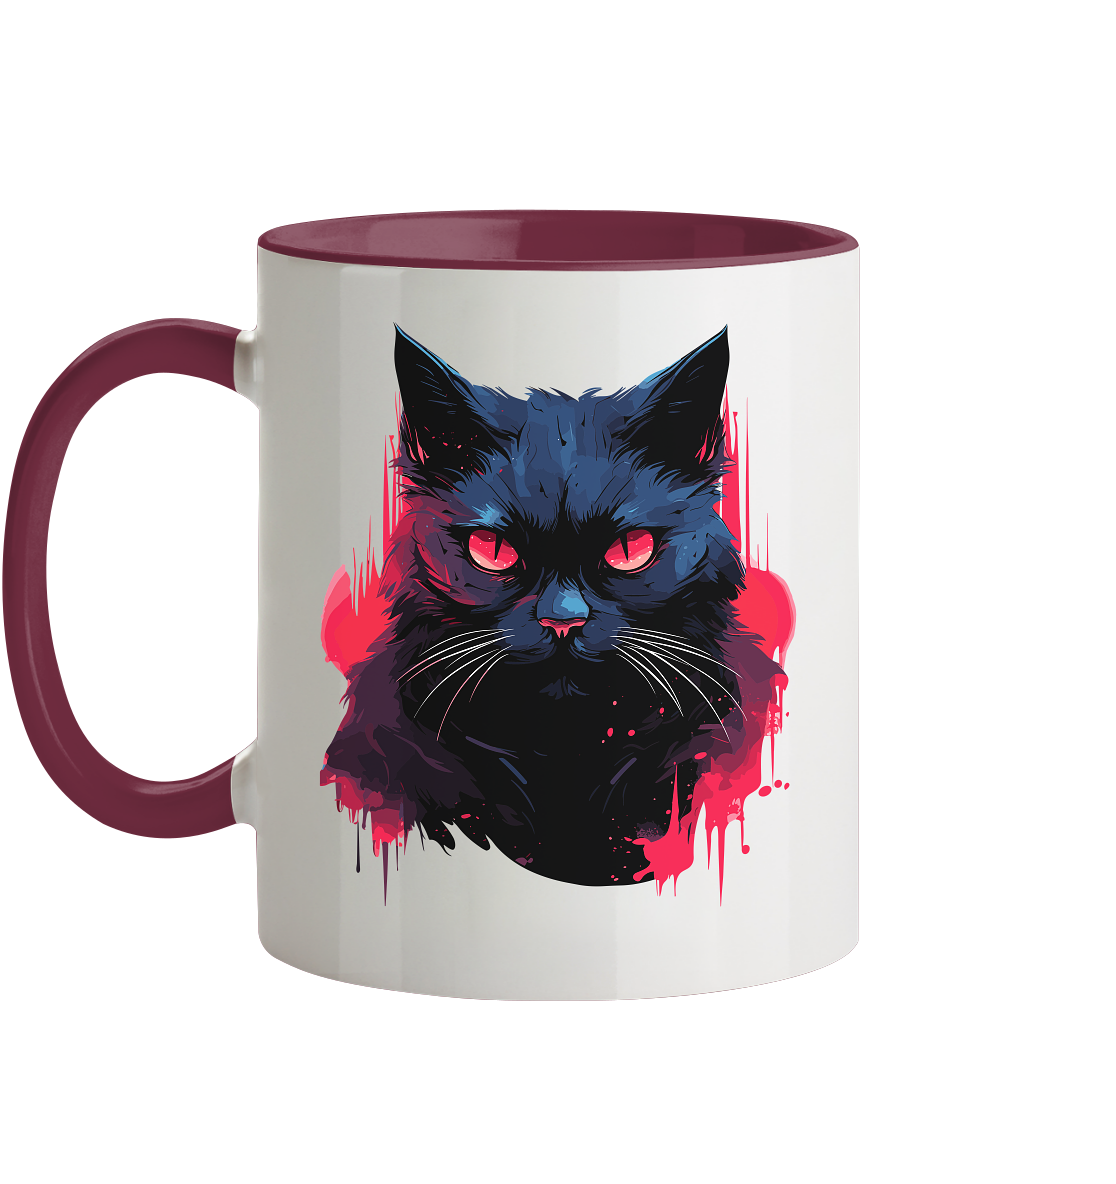 Zweifarbige Tasse mit Katzenmotiv "Dark Cat" - Mindprints Design